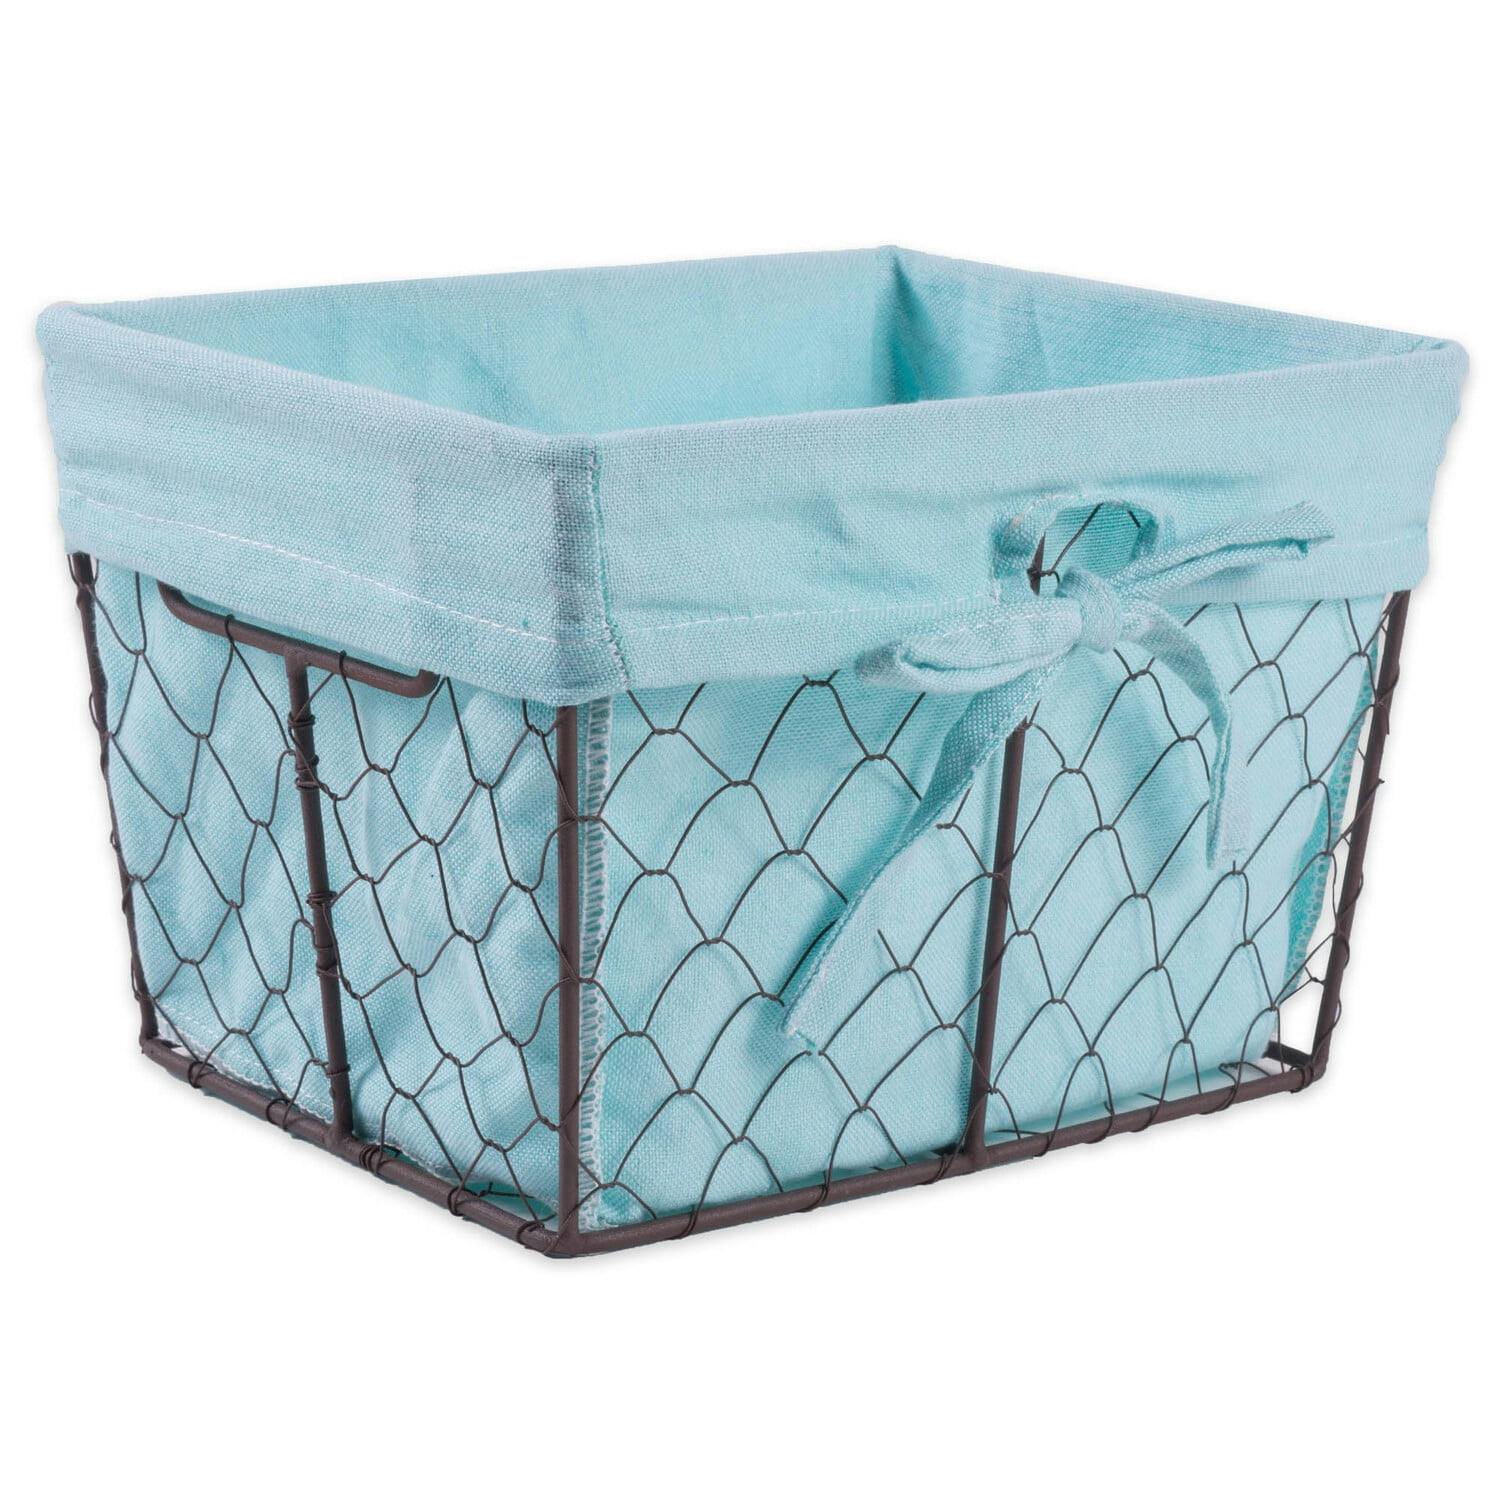 Aqua Blue Antique-Inspired Chicken Wire Storage Basket Set